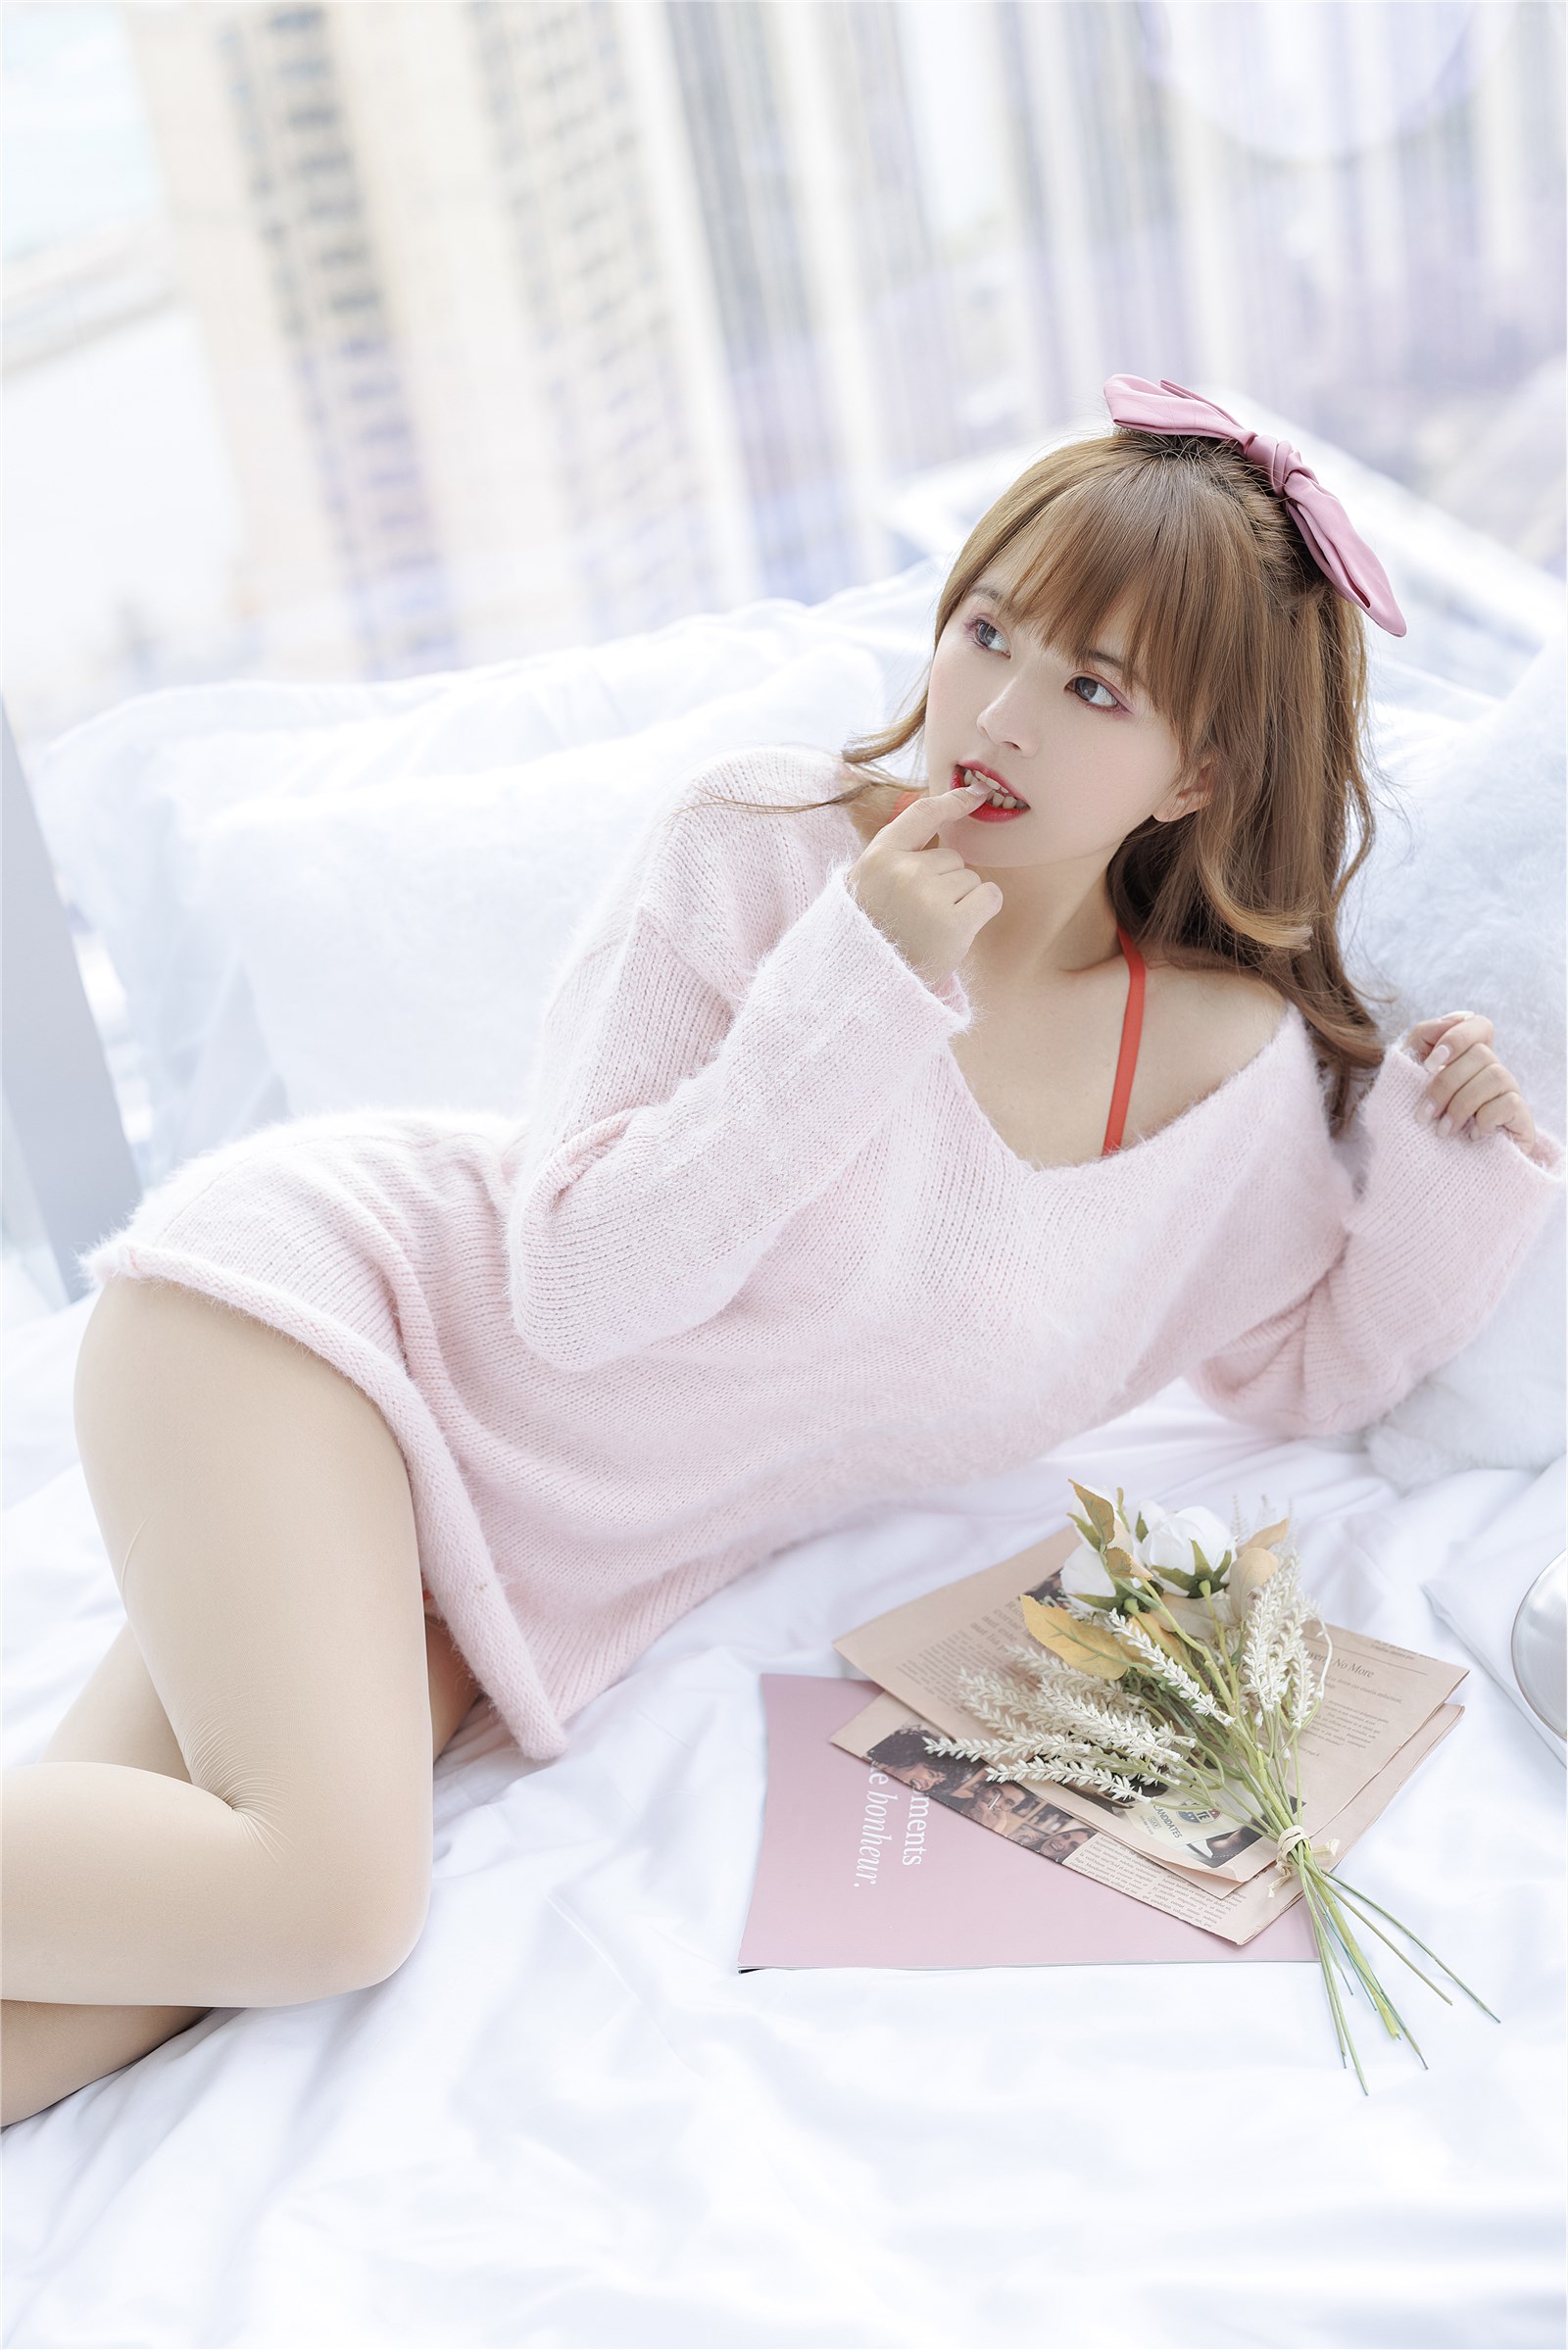 002. Zhang Siyun Nice - Internal purchase of watermark free pink sweater(13)